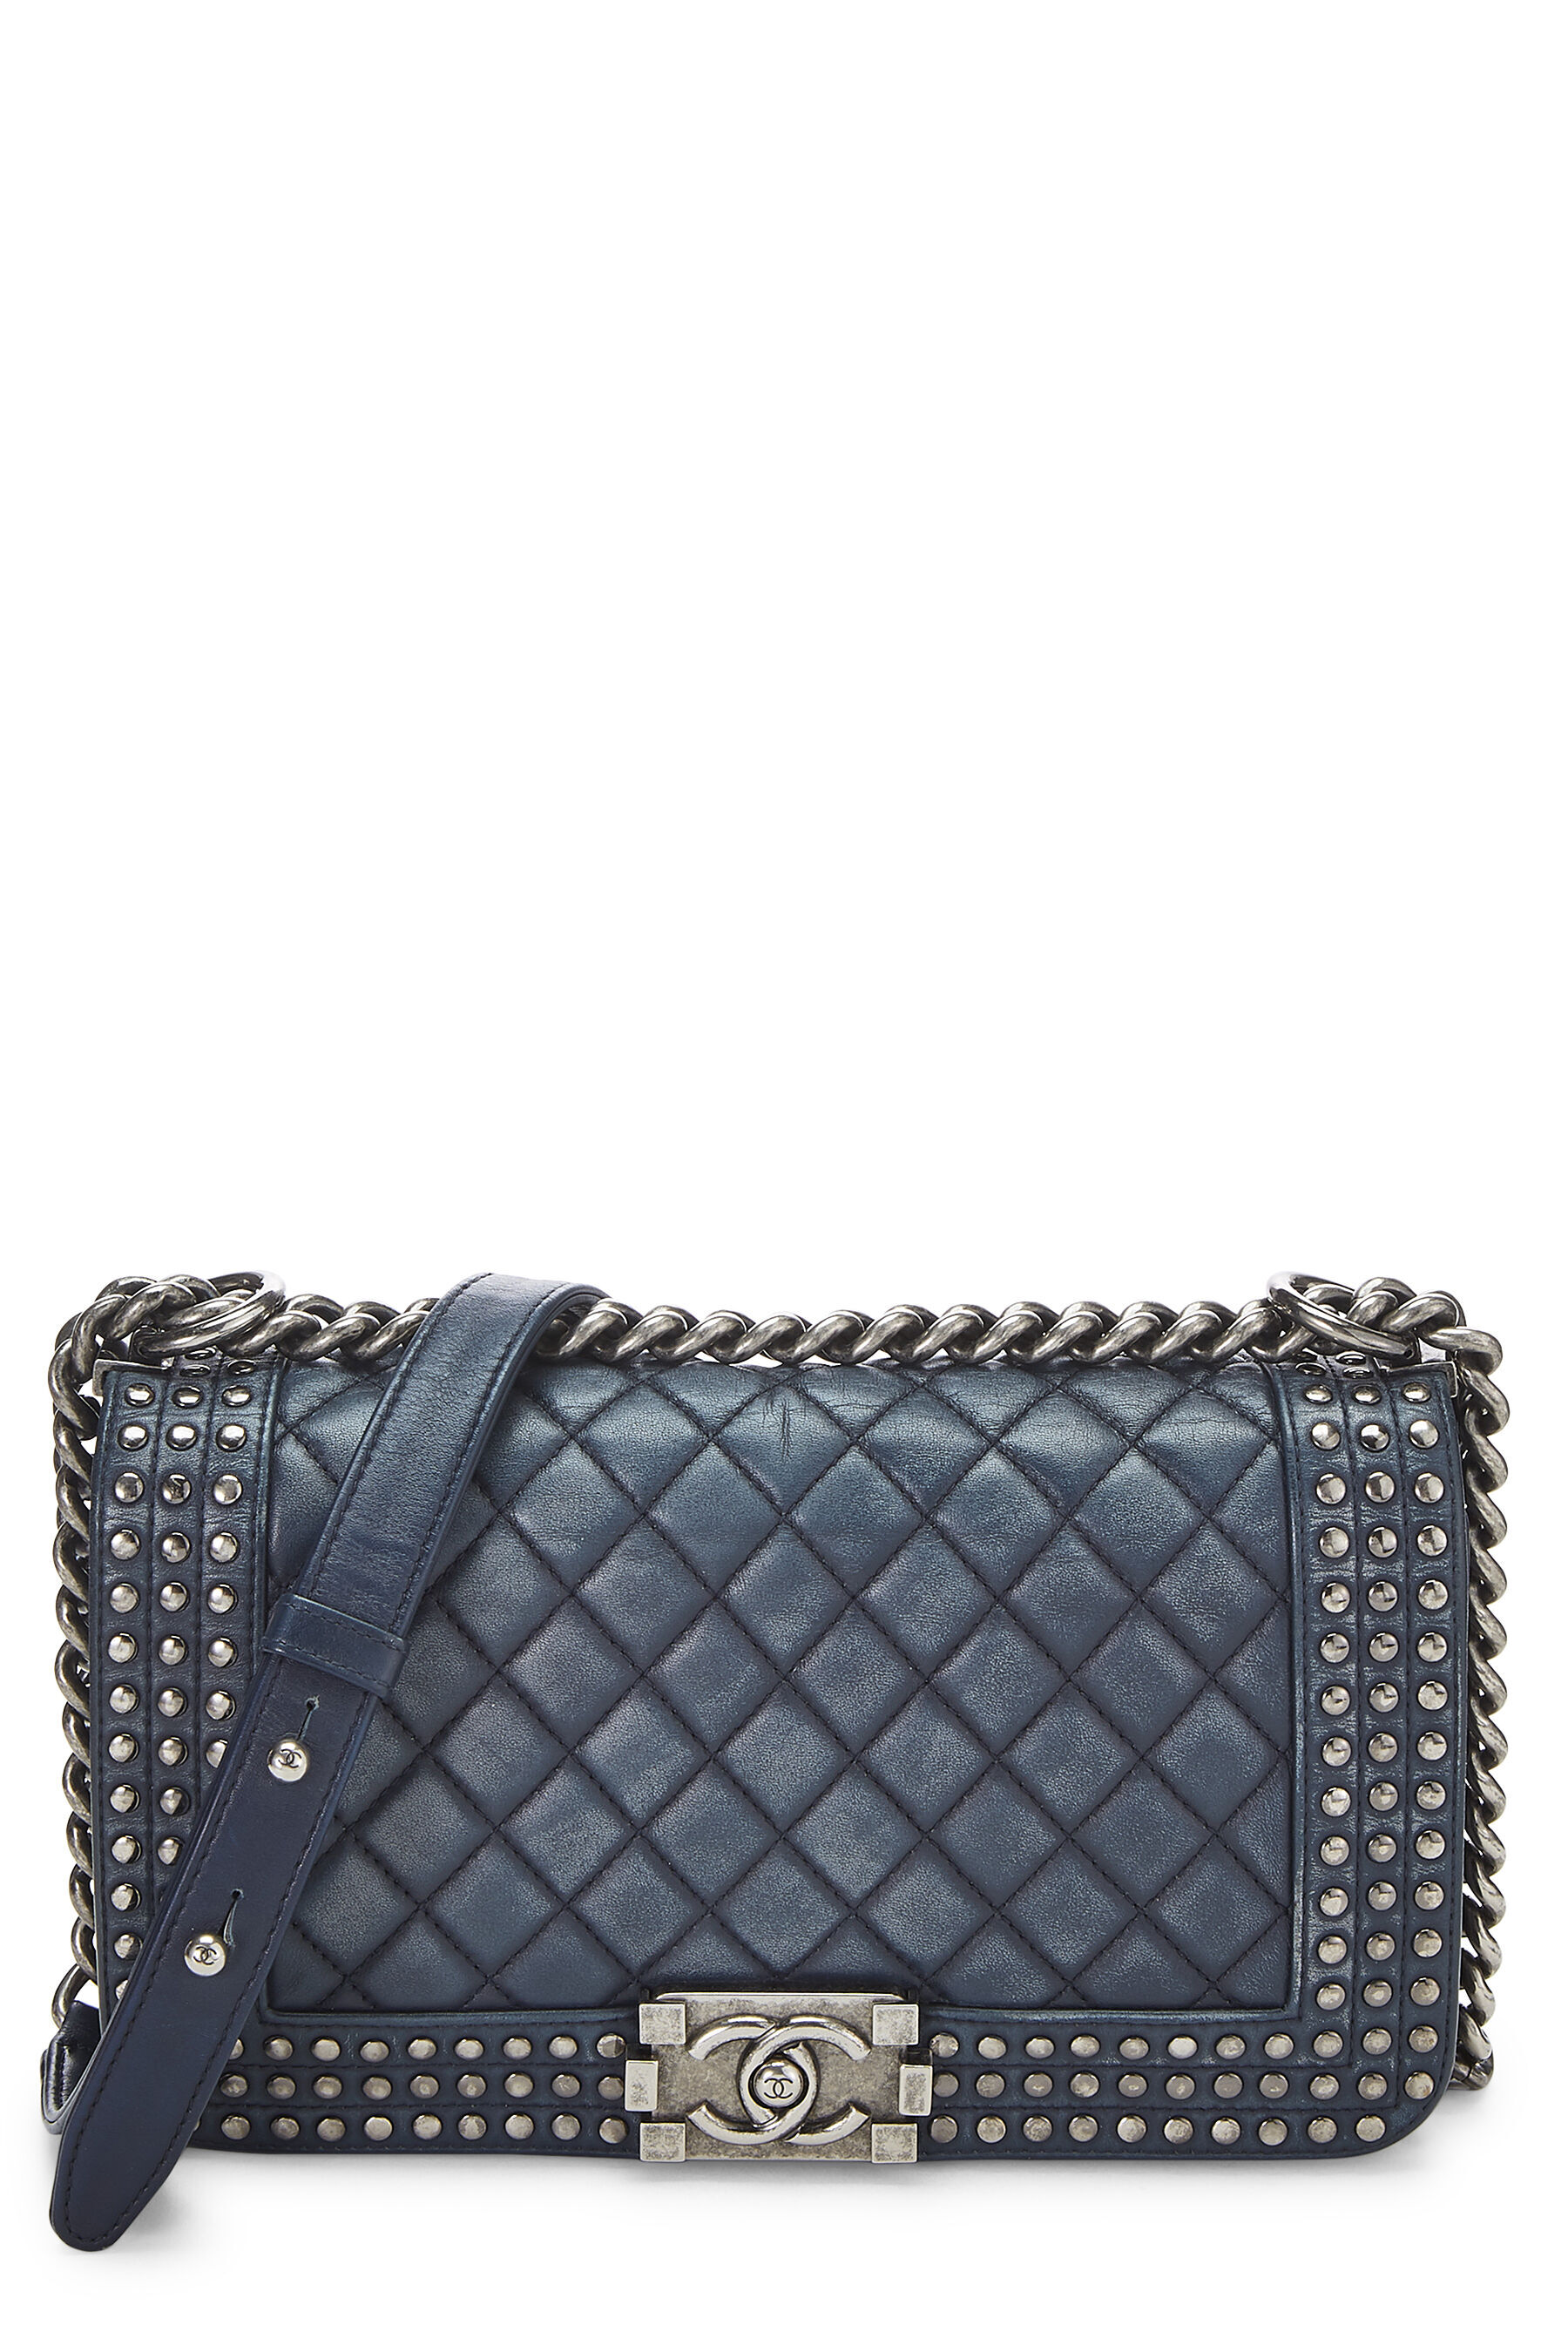 Chanel ParisDallas Fringe Flap Shoulder Bag Black Quilted Leather